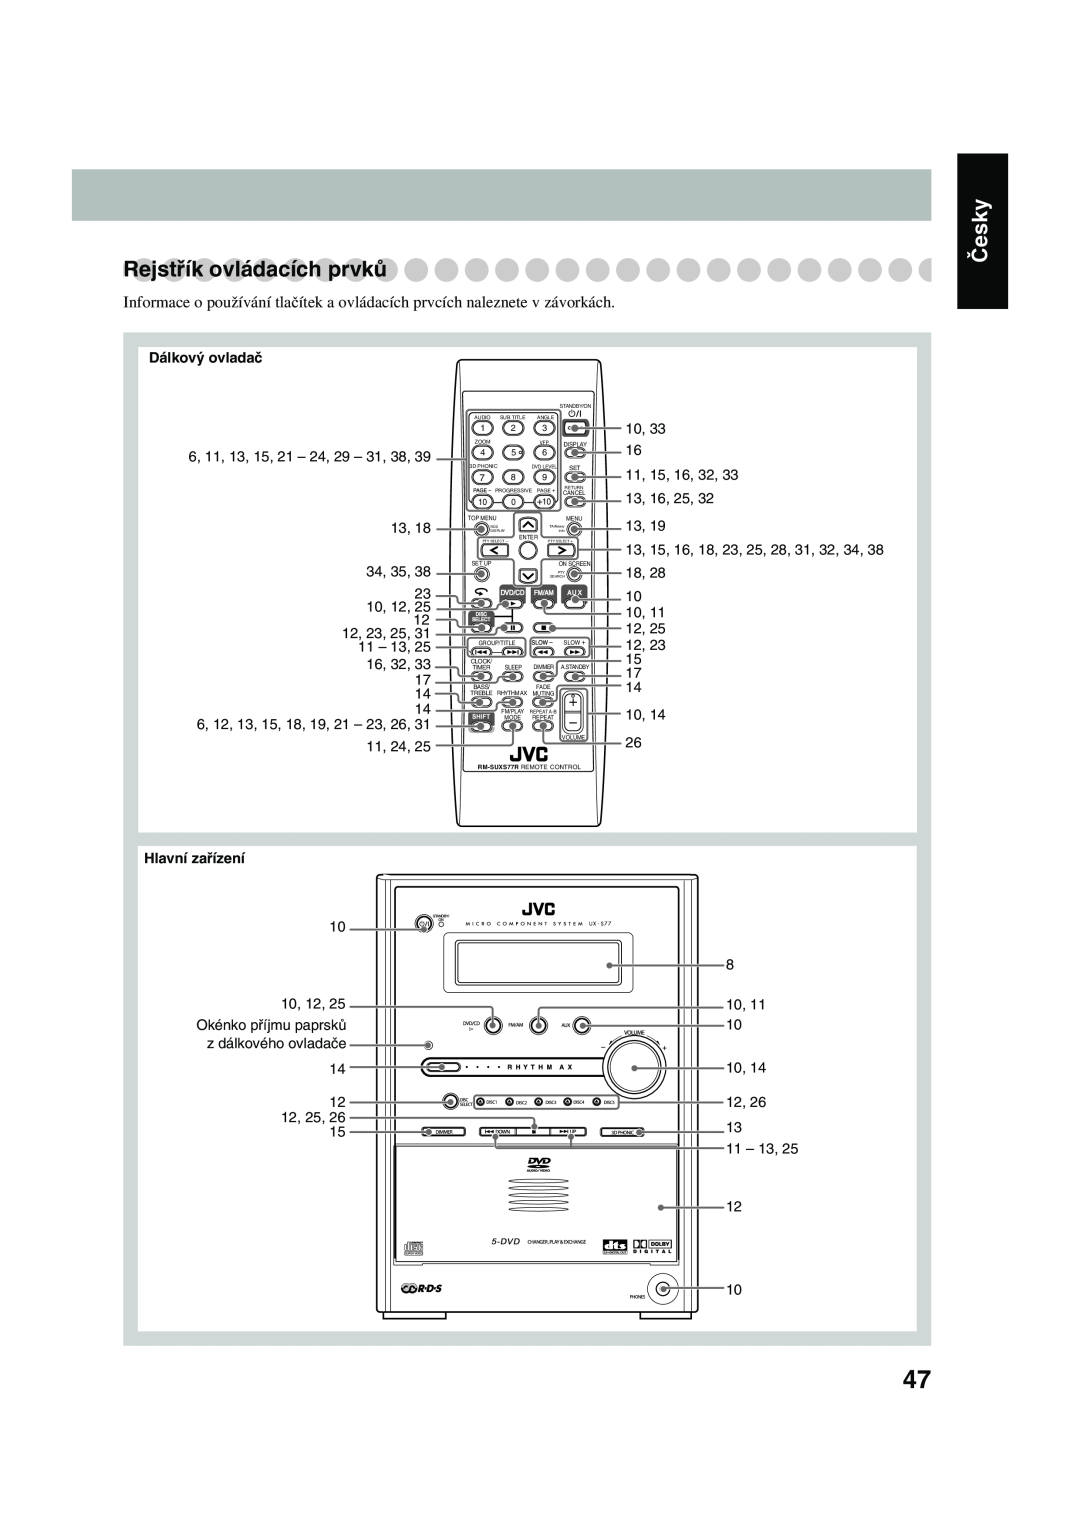 JVC CA-UXS77, SP-UXS77 manual Rejstříkovládacích prvků, Česky, Dálkový ovladač, Hlavní zařízení 